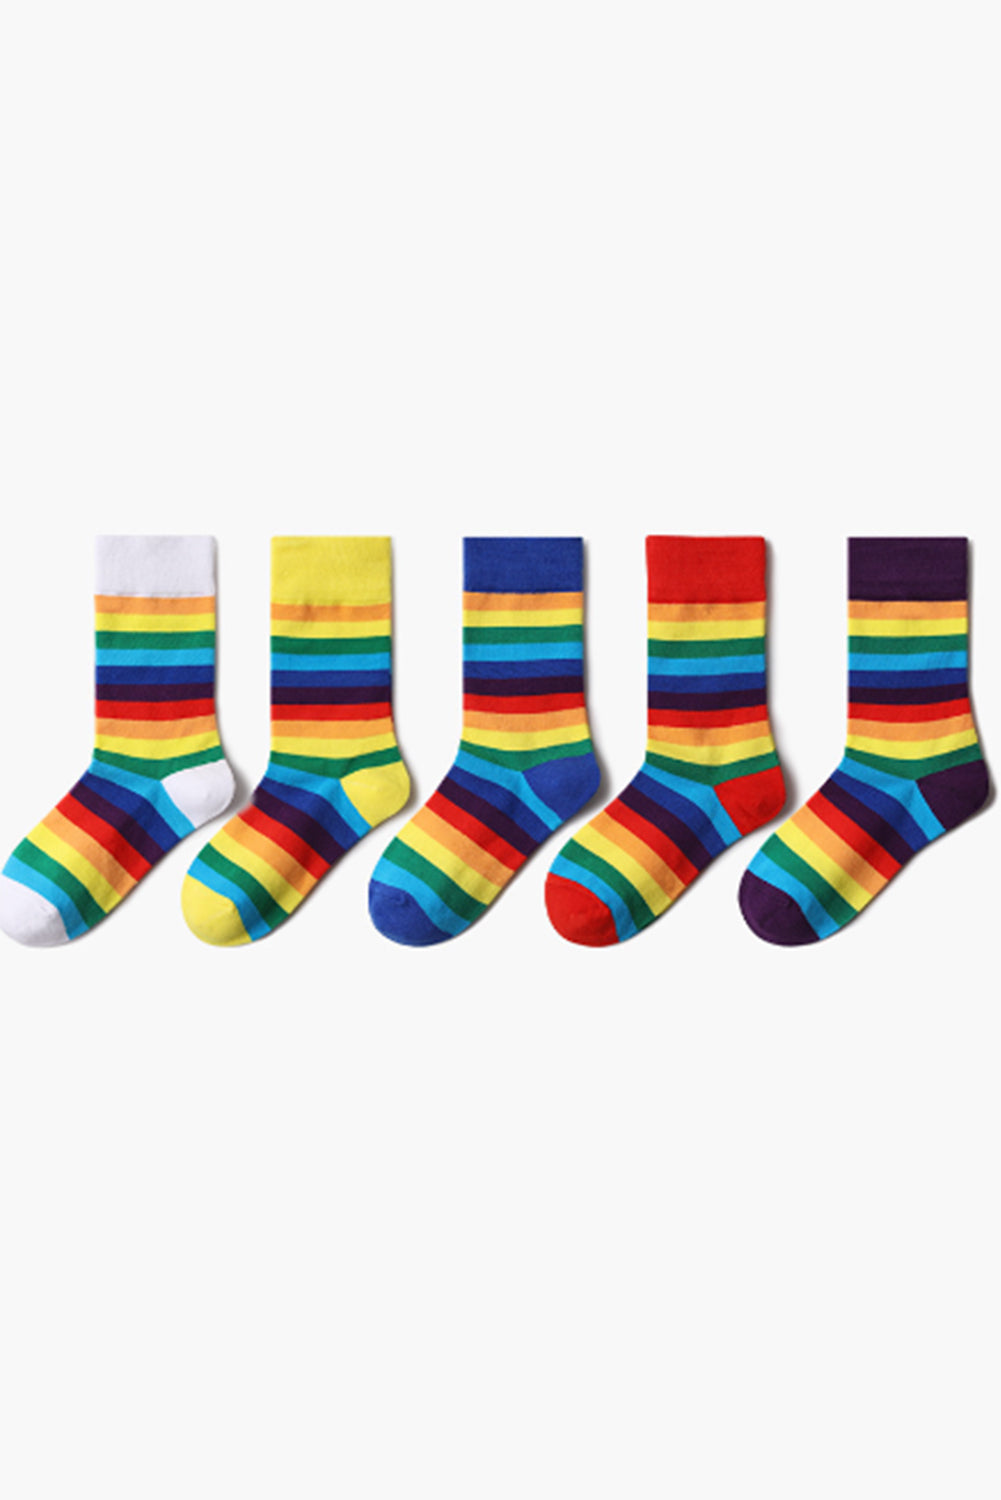 BH041619-3, Red Pride Sport Socks Men Women Rainbow LGBTQ Accessories Socks